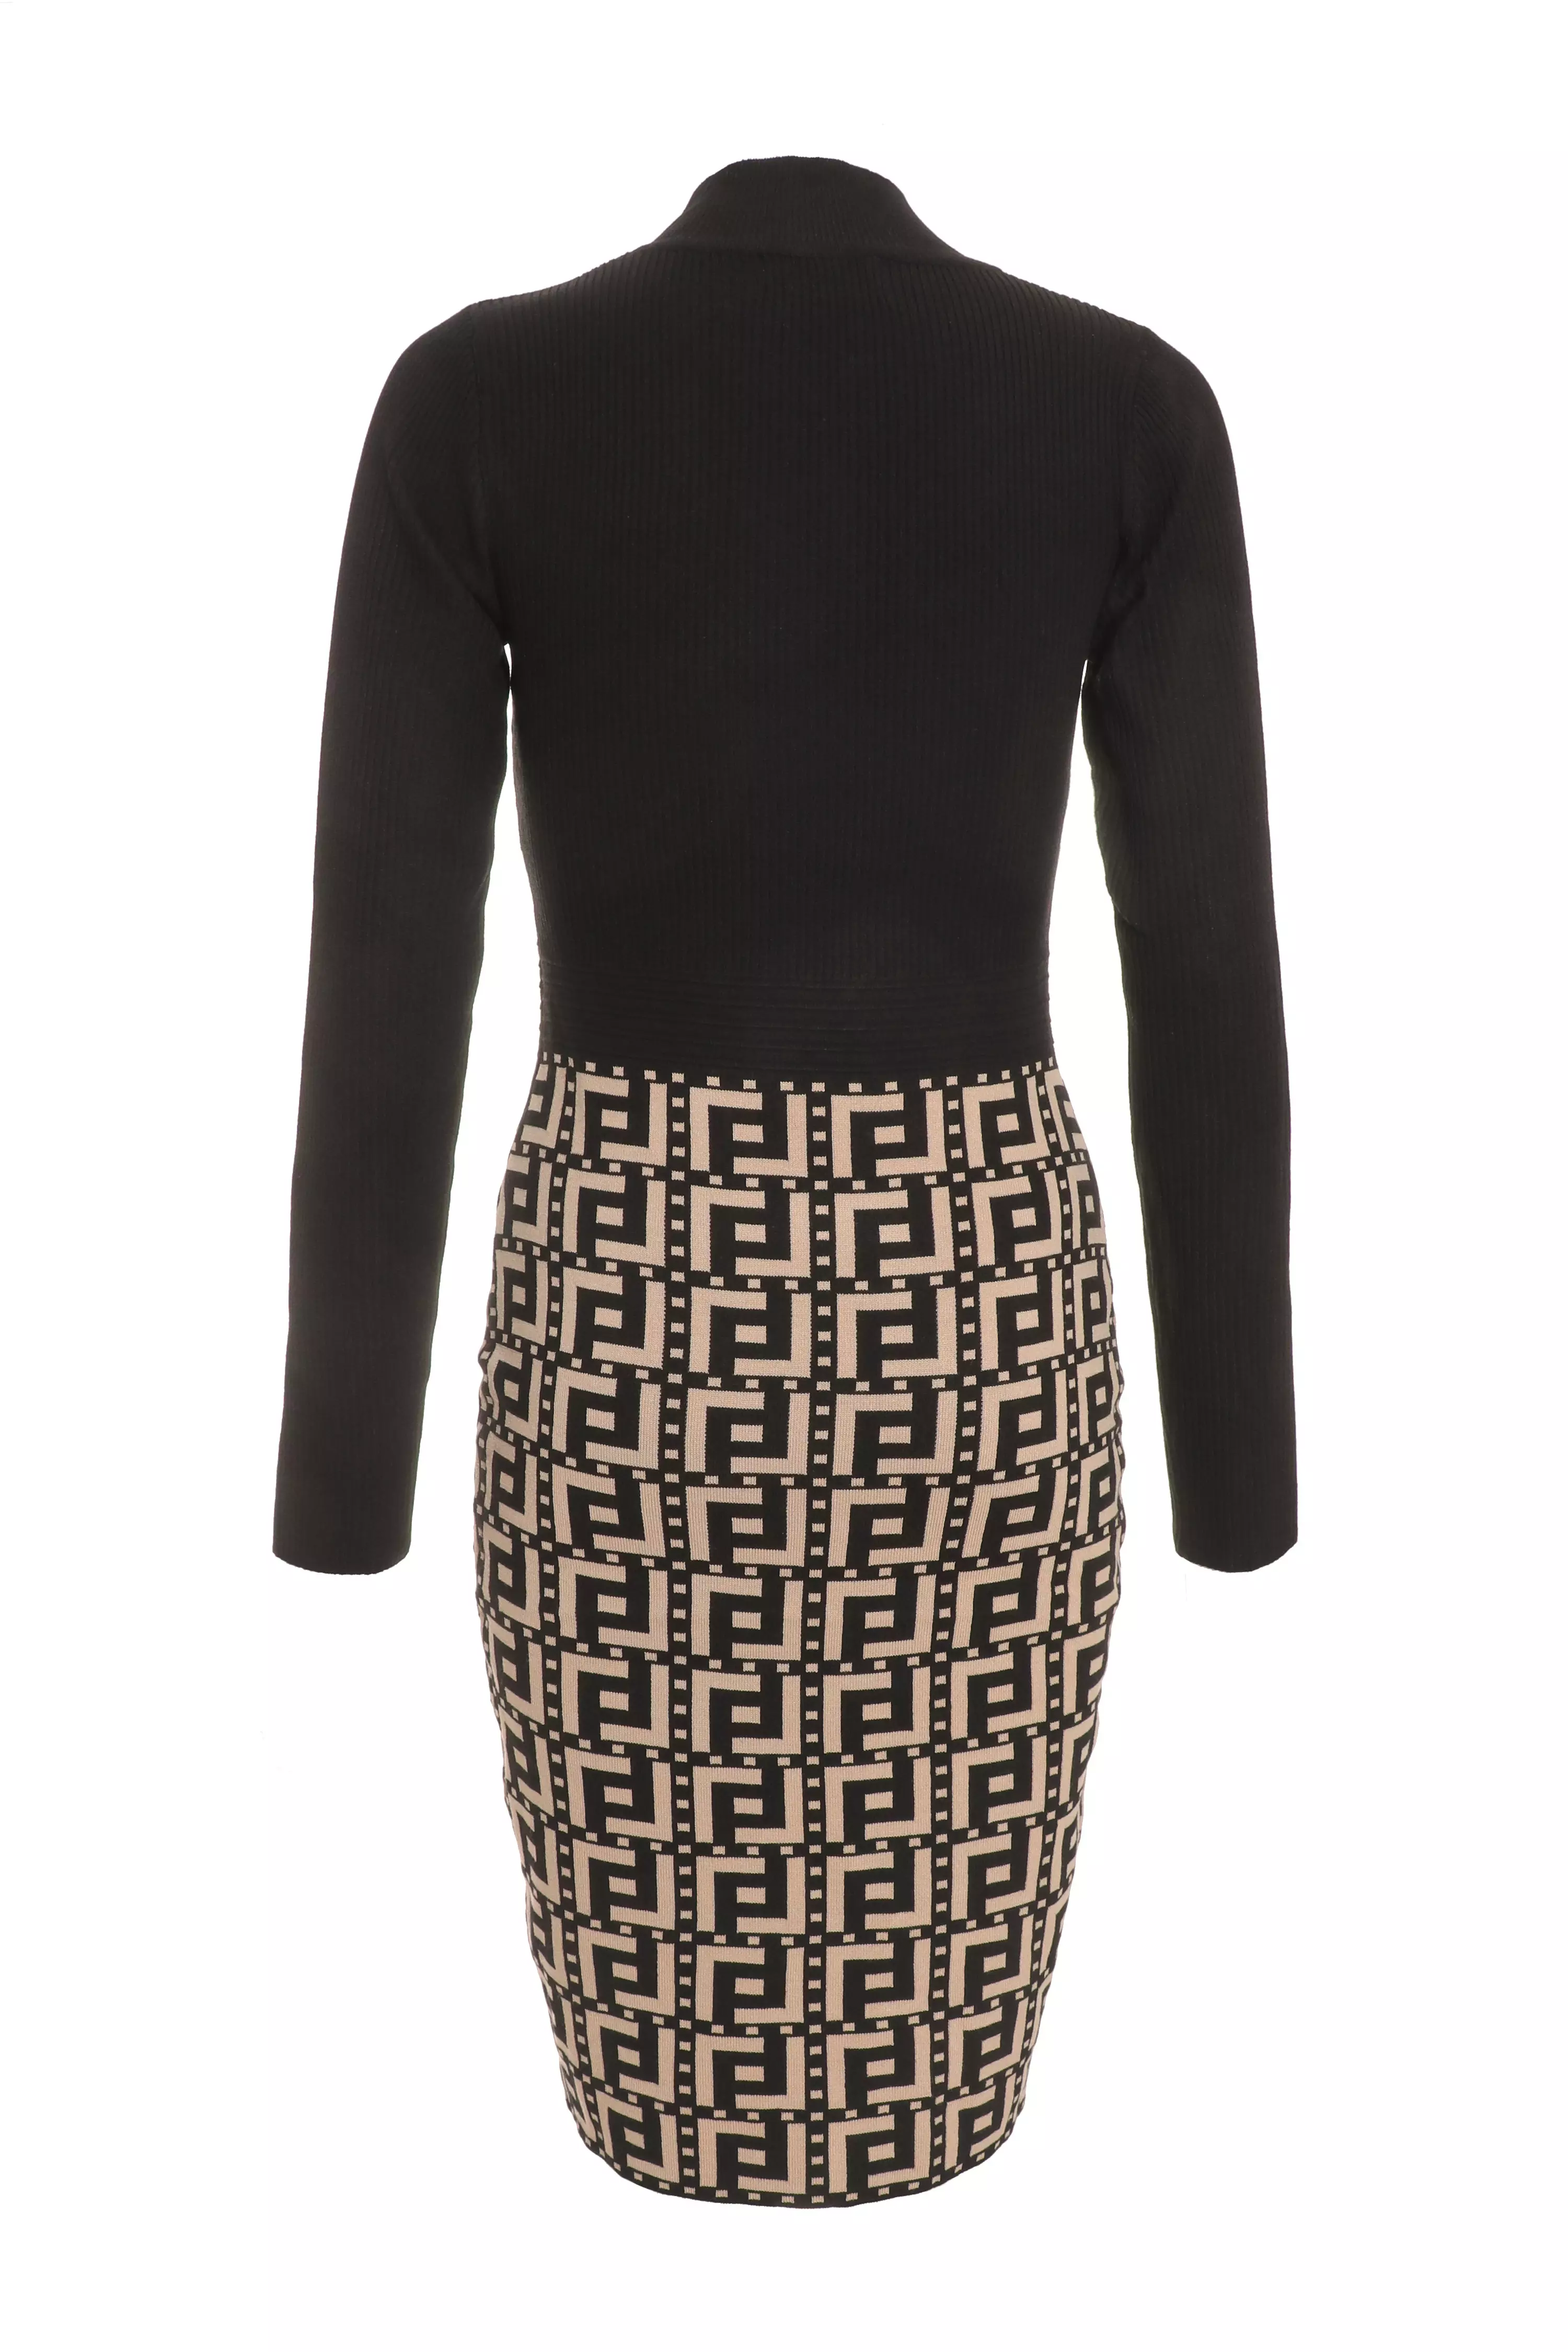 Black Geometric Print Knitted Jumper Dress